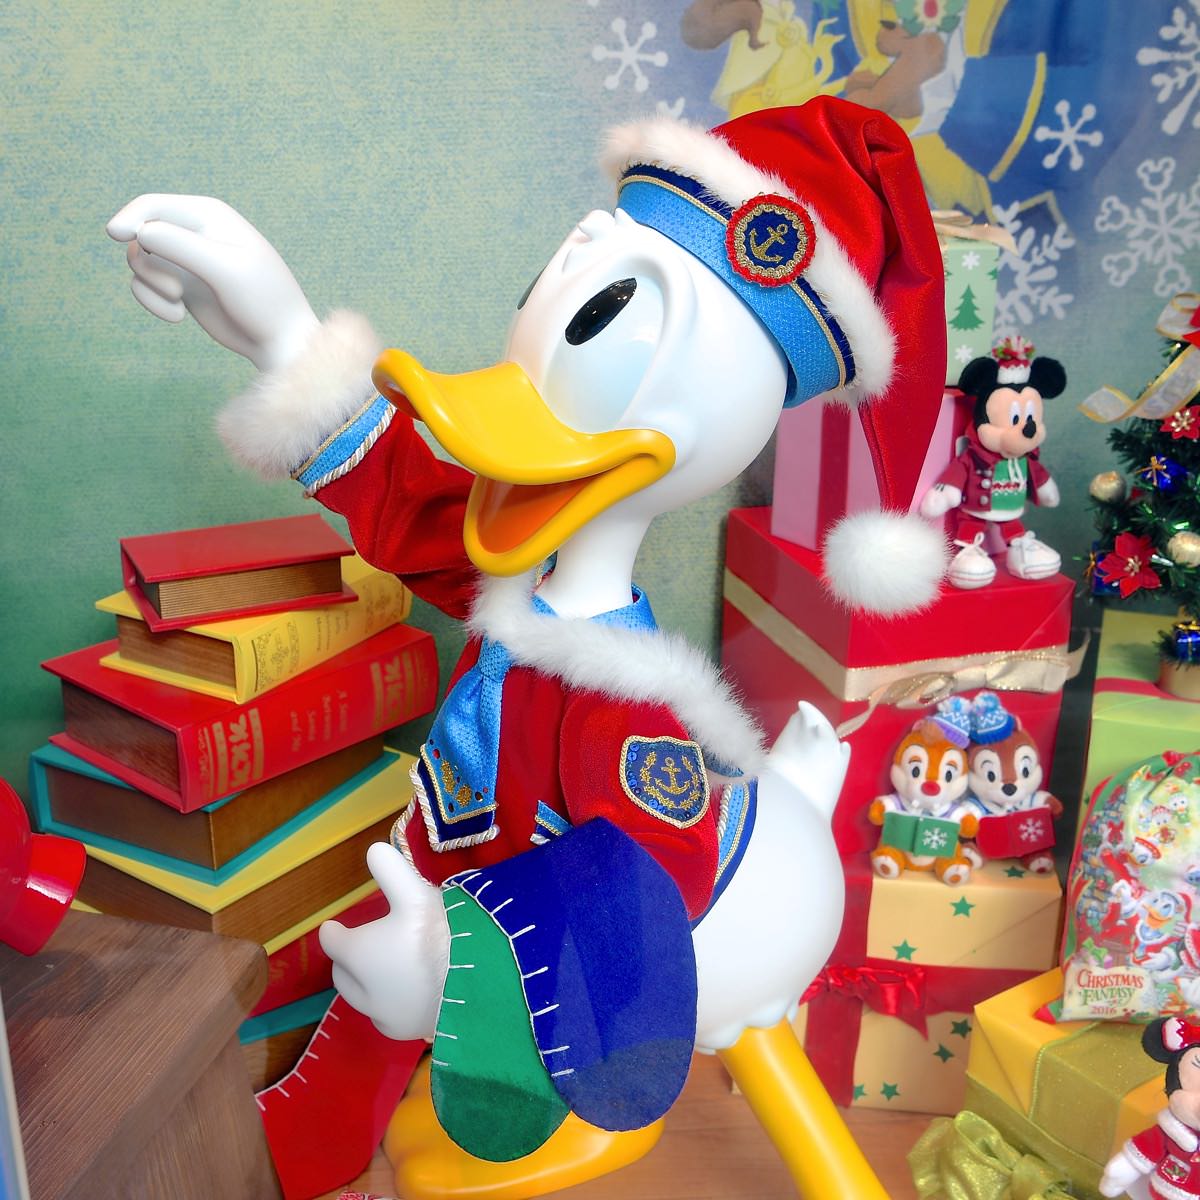 クリスマスを楽しむミッキーたち 東京ディズニーランド クリスマス ファンタジー16 スペシャルグッズ